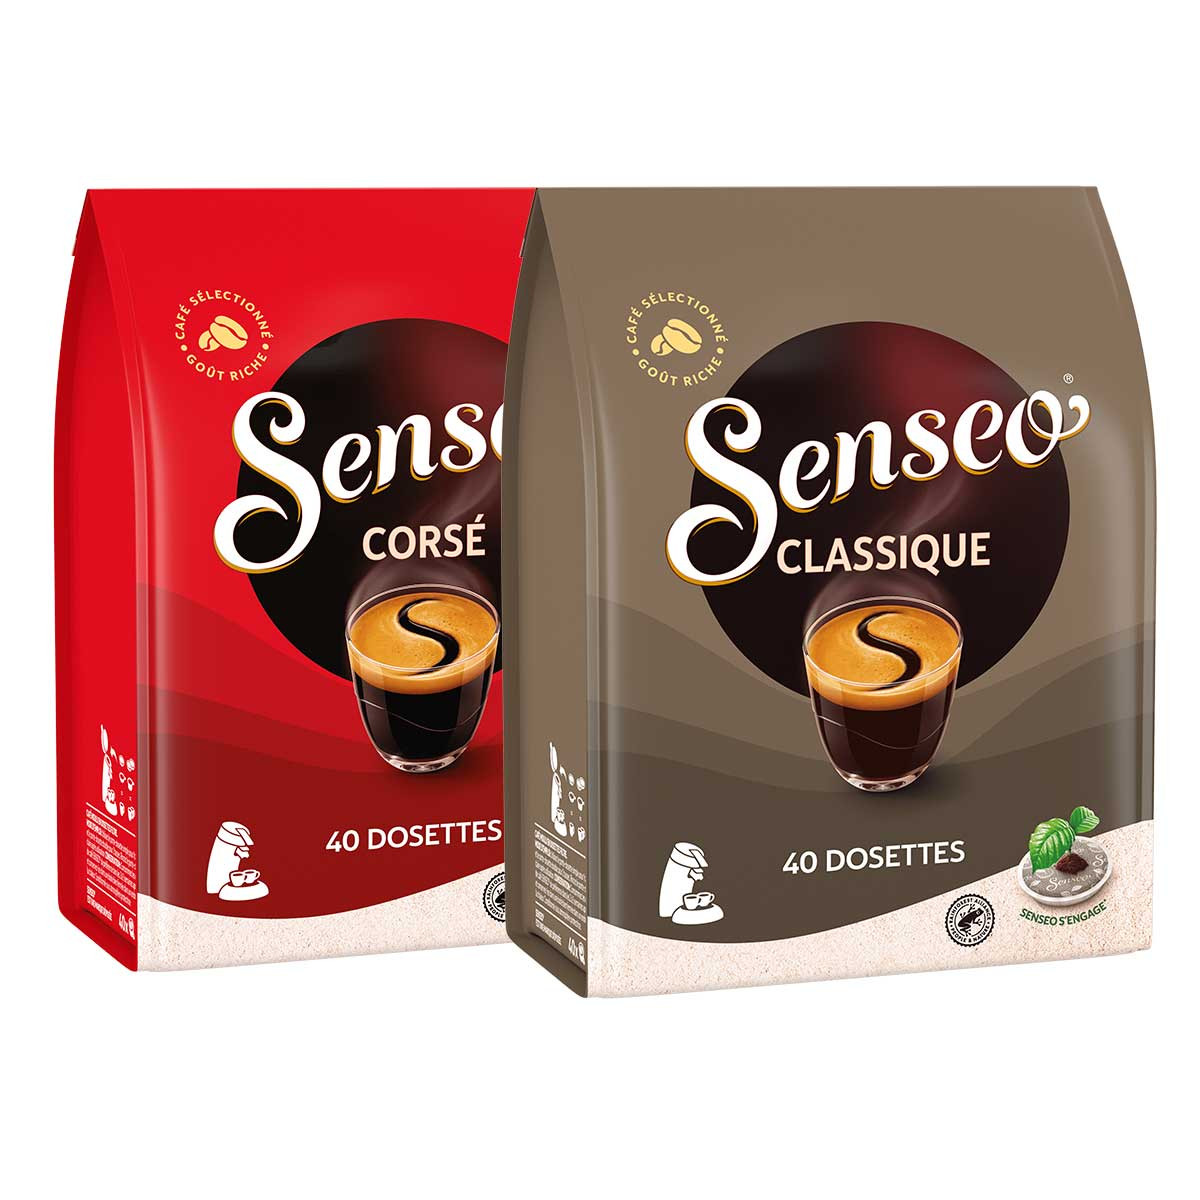 Pack découverte Senseo - Café, sucres, thé, chocolat lacté